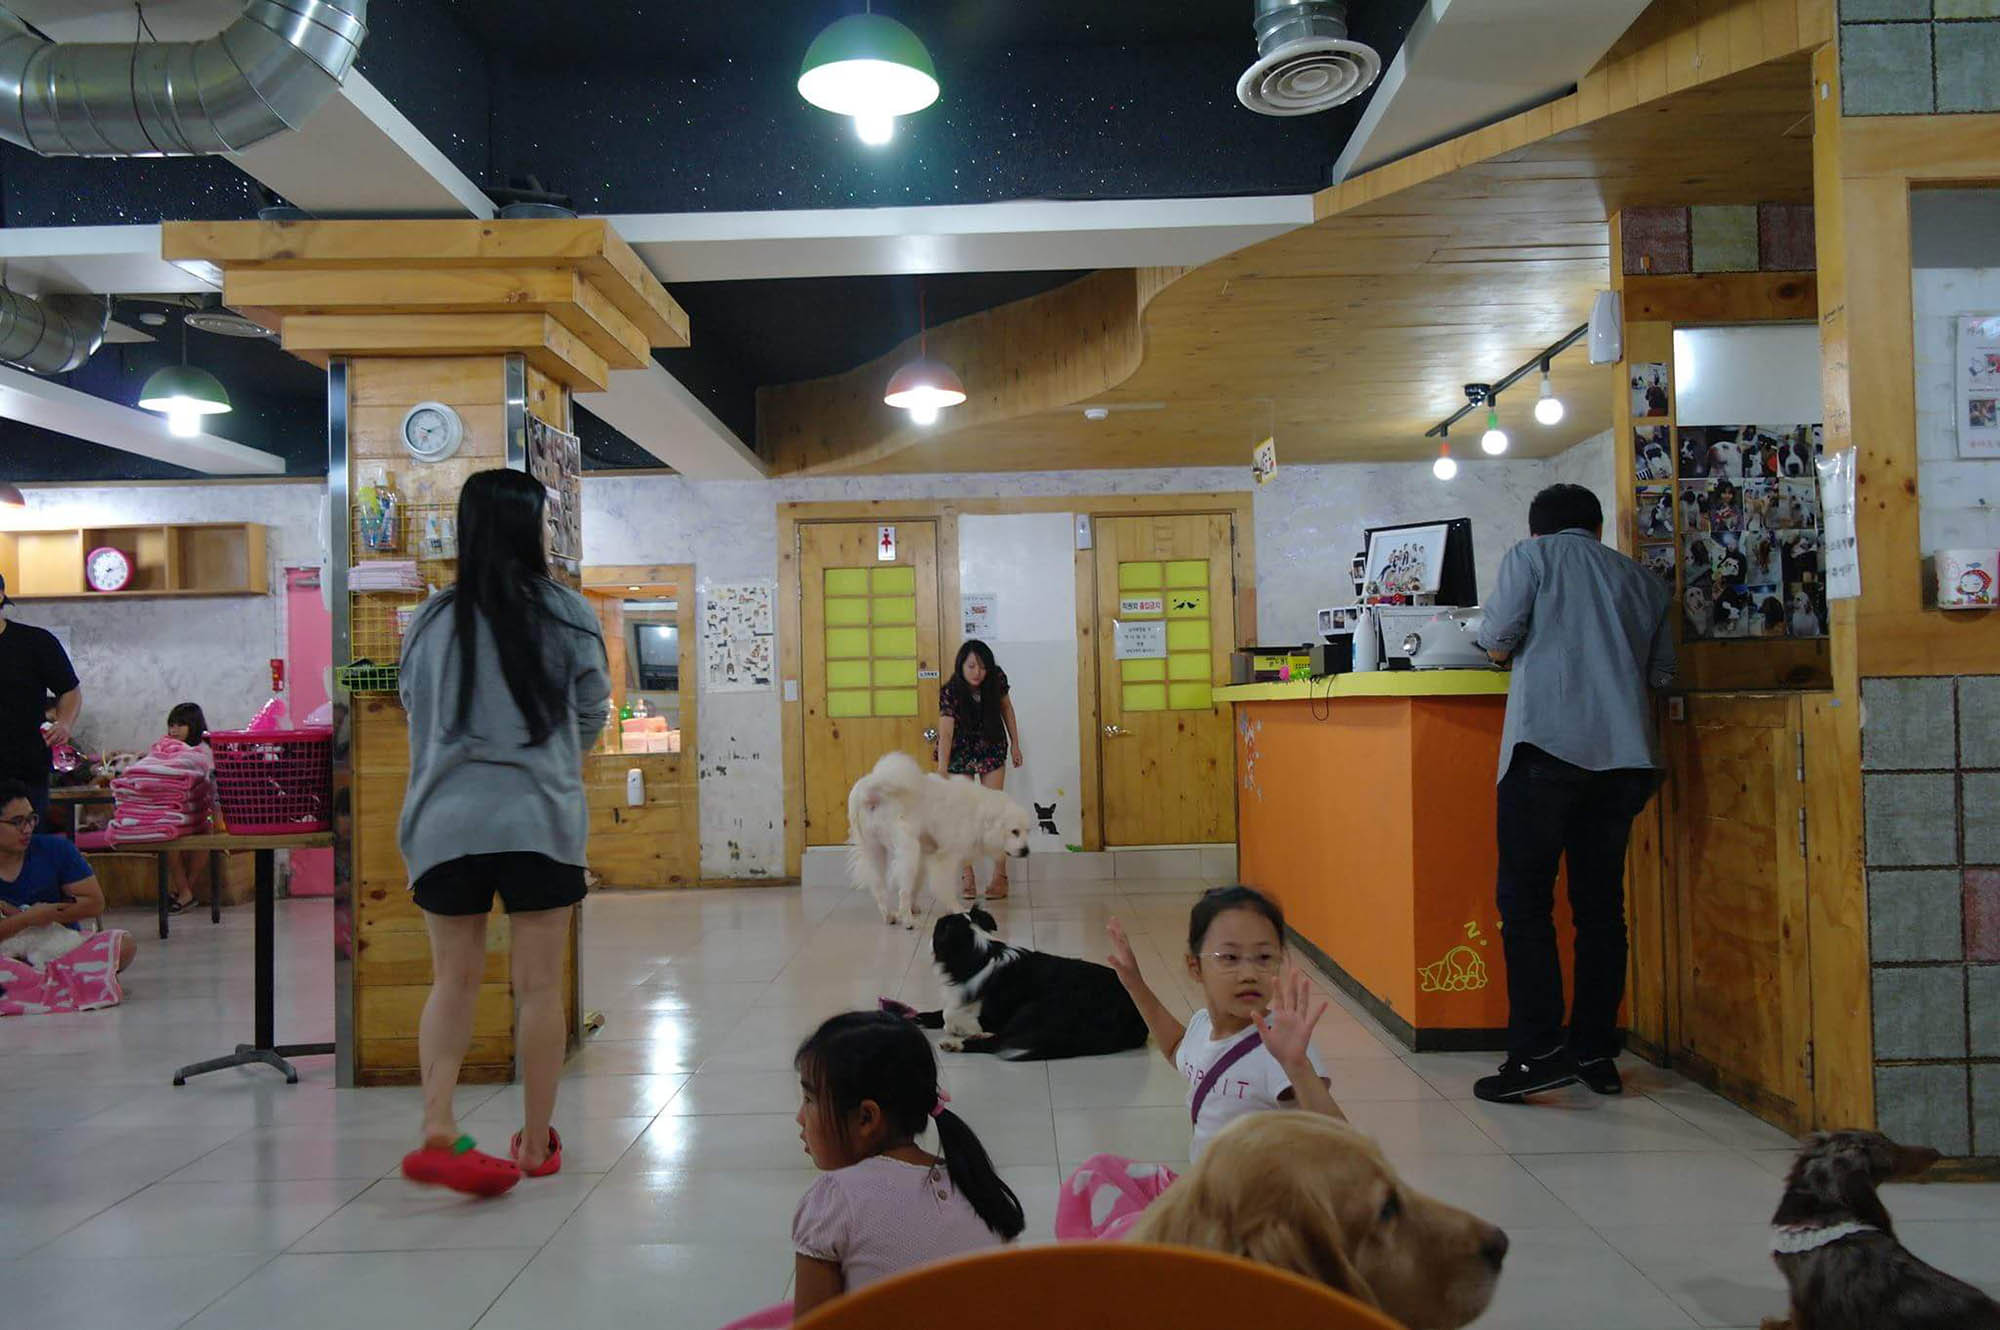 «Кафе с собаками» — Cafe Gaene Myeongdong. Вход платный — 6000 KRW (322 ₽). Кофейный напиток стоит 4000 KRW (345 ₽). Играть с собаками можно сколько угодно